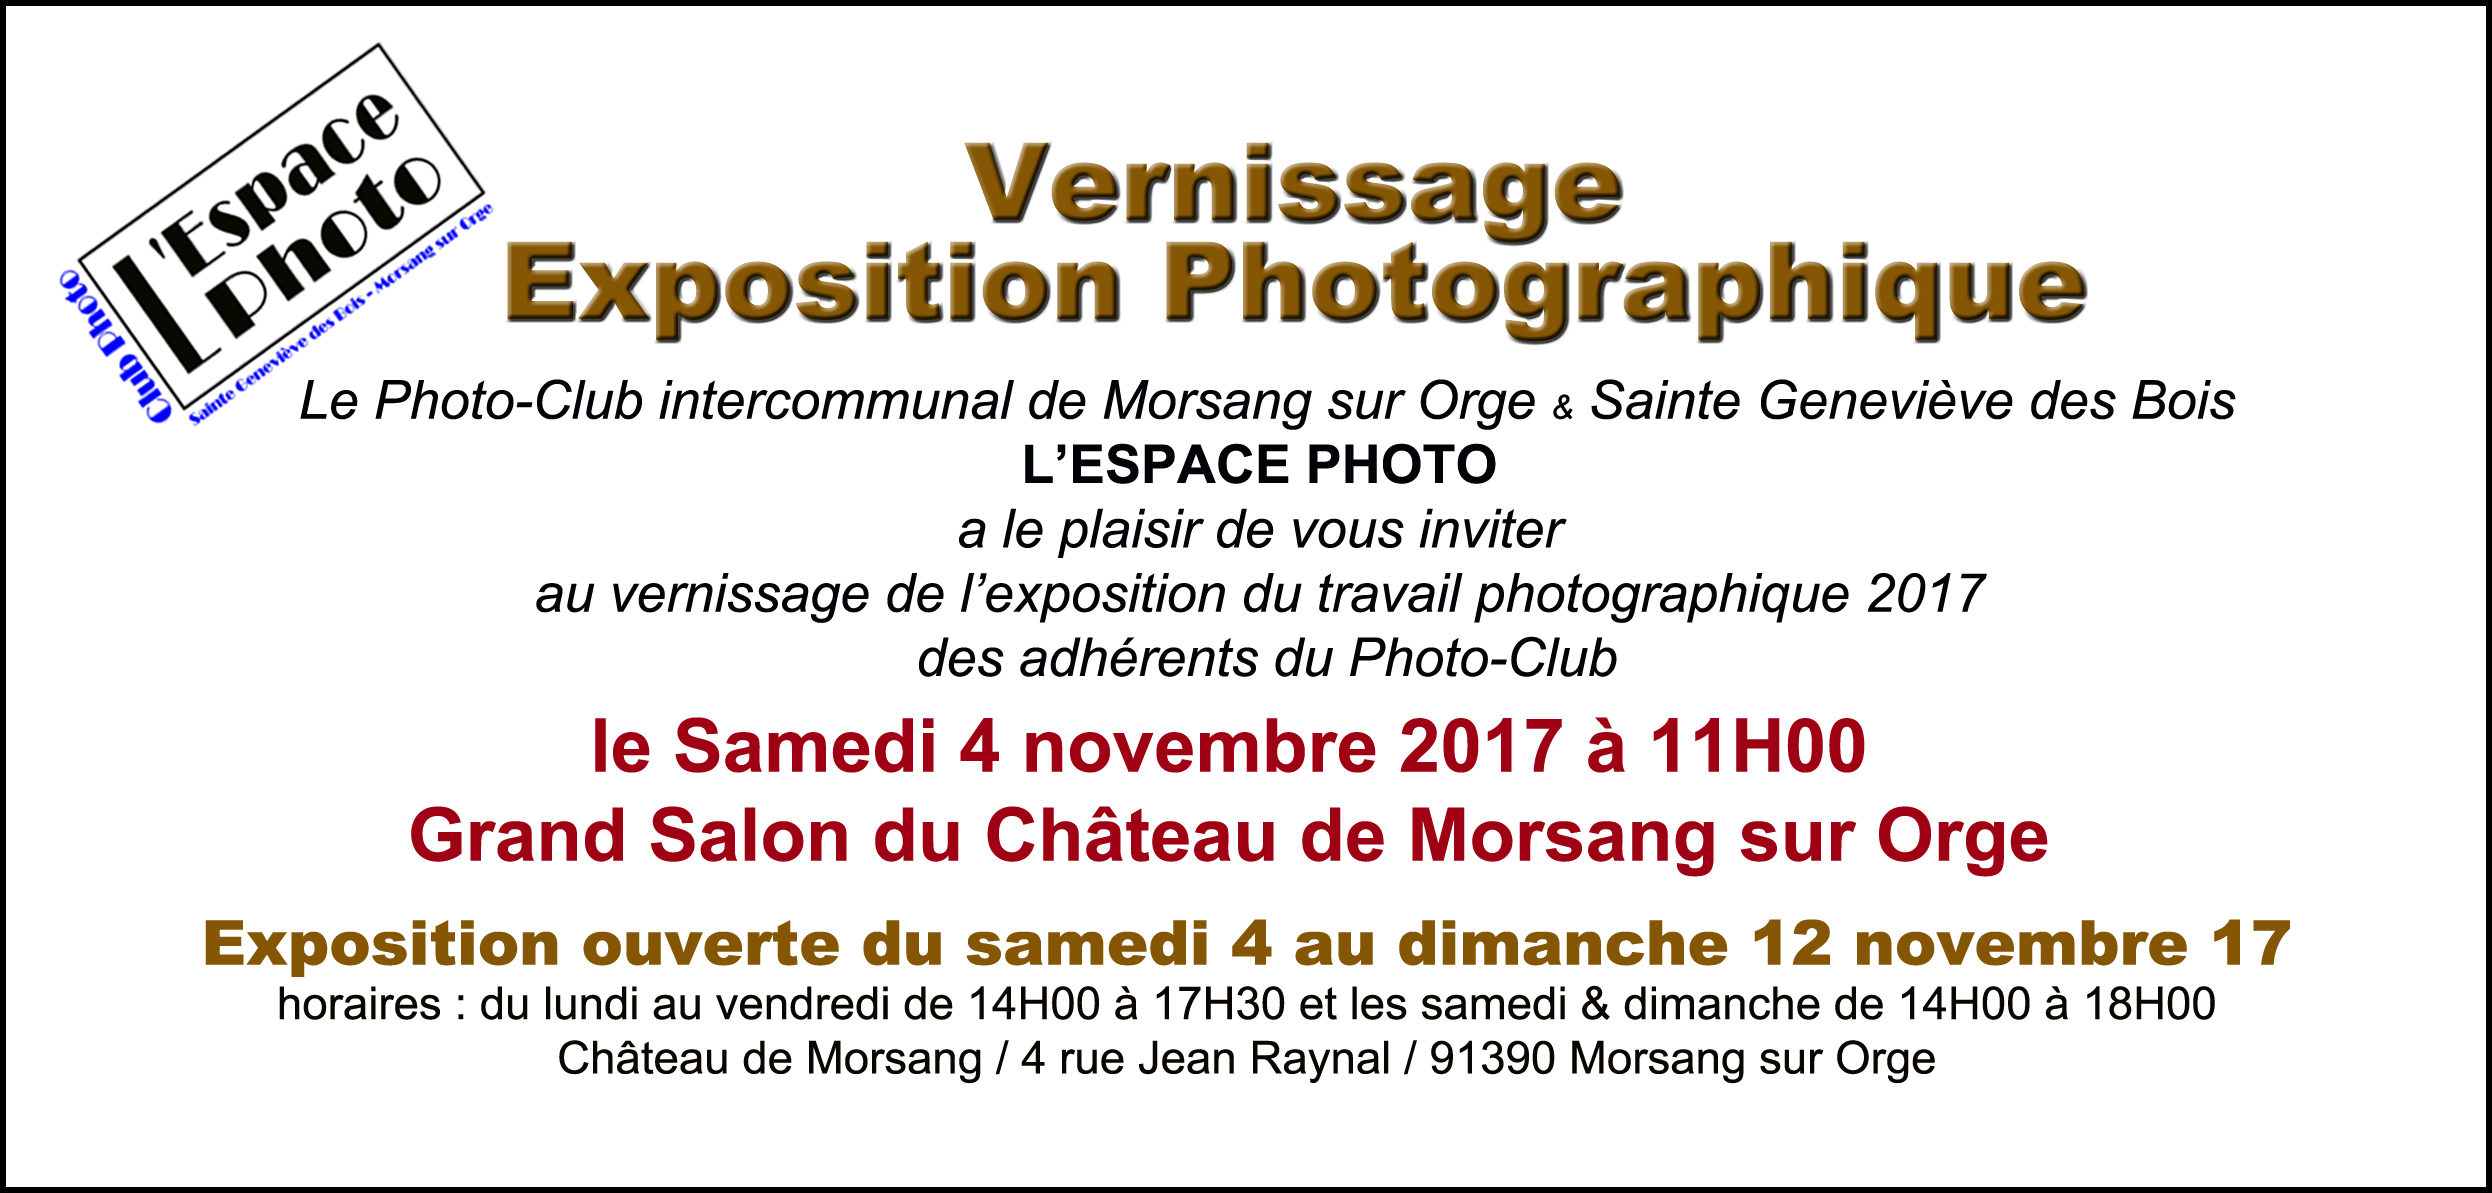 Invitation au vernissage de l’expo interne de L’Espace Photo le samedi 4 novembre à 11H00 au Château de Morsang